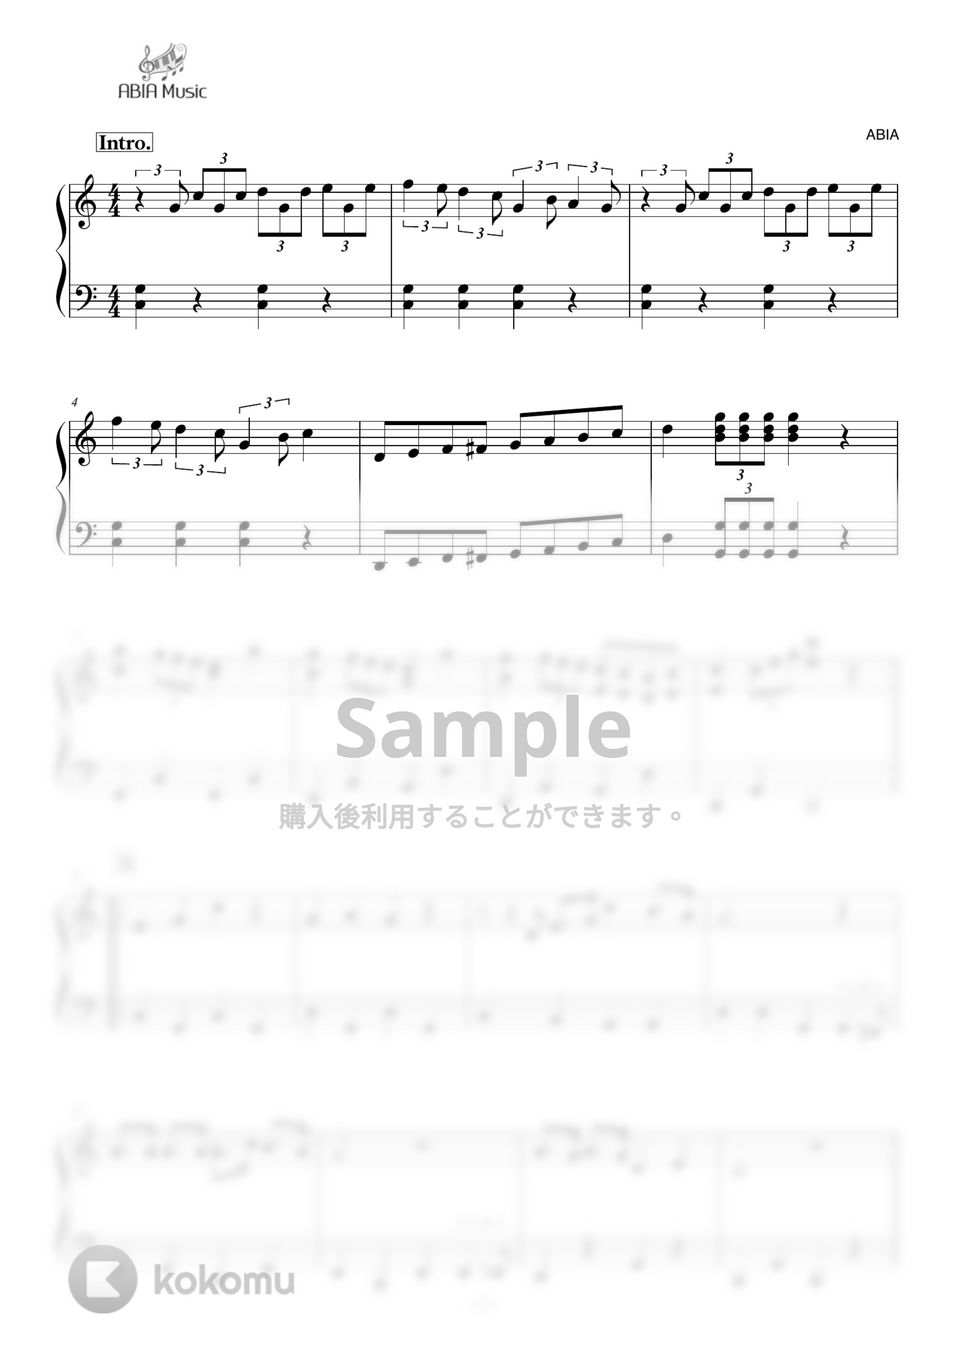 久石譲 - さんぽ by ABIA Music